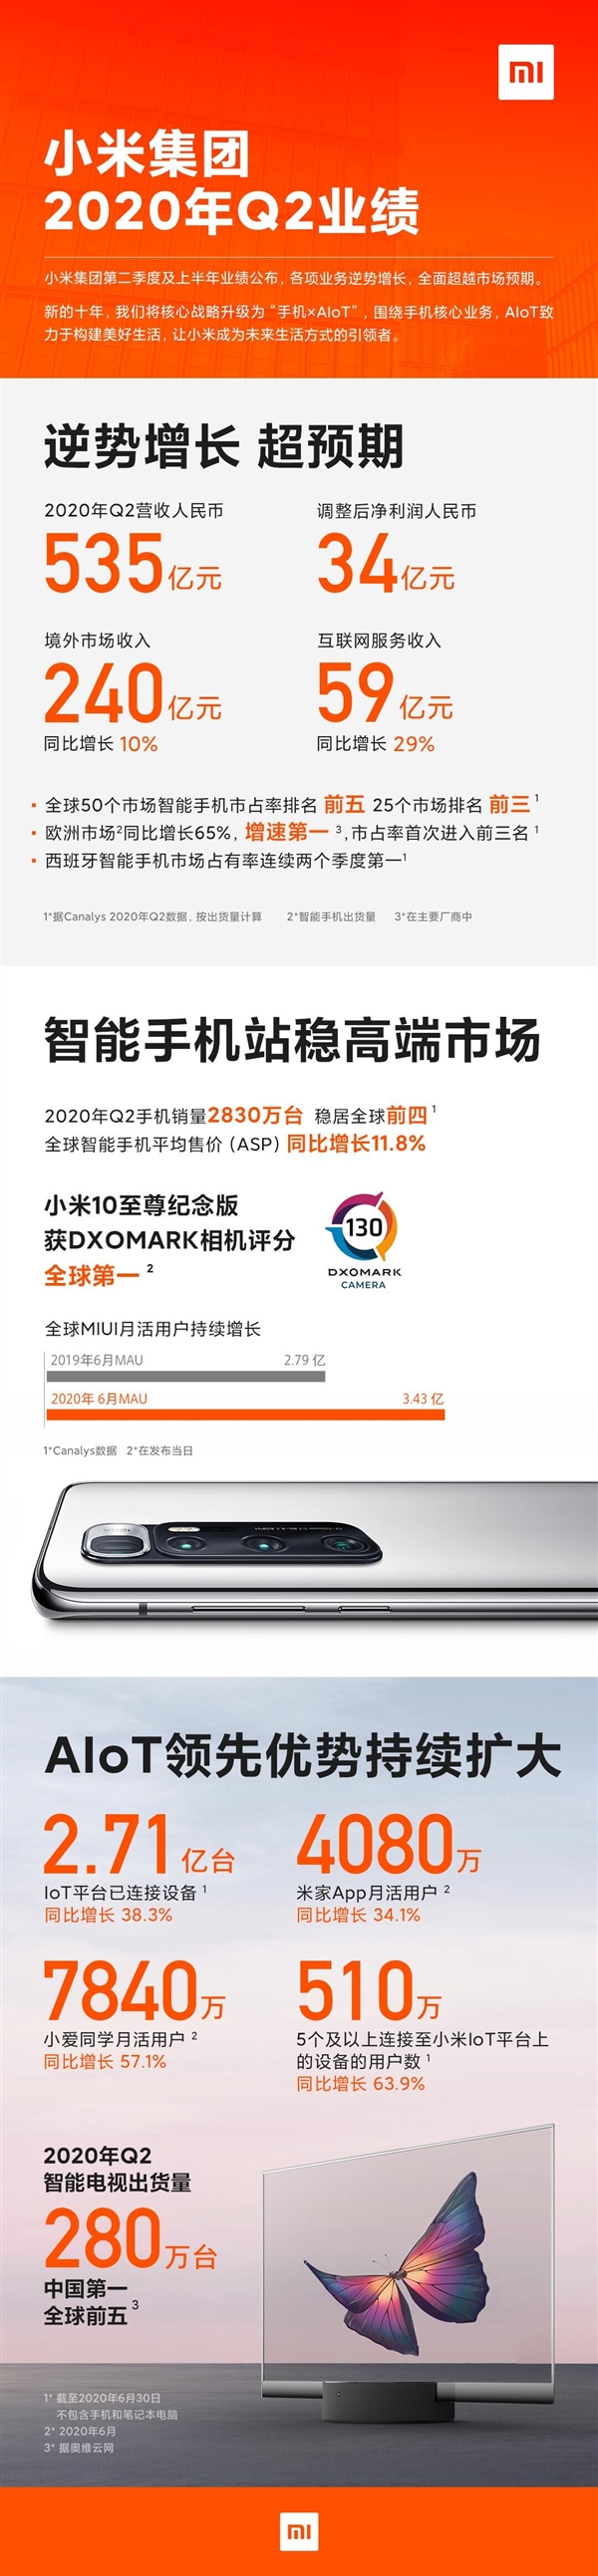 一图看懂小米Q2财报：小米品牌站稳高端 手机平均单价同比提高11.8%